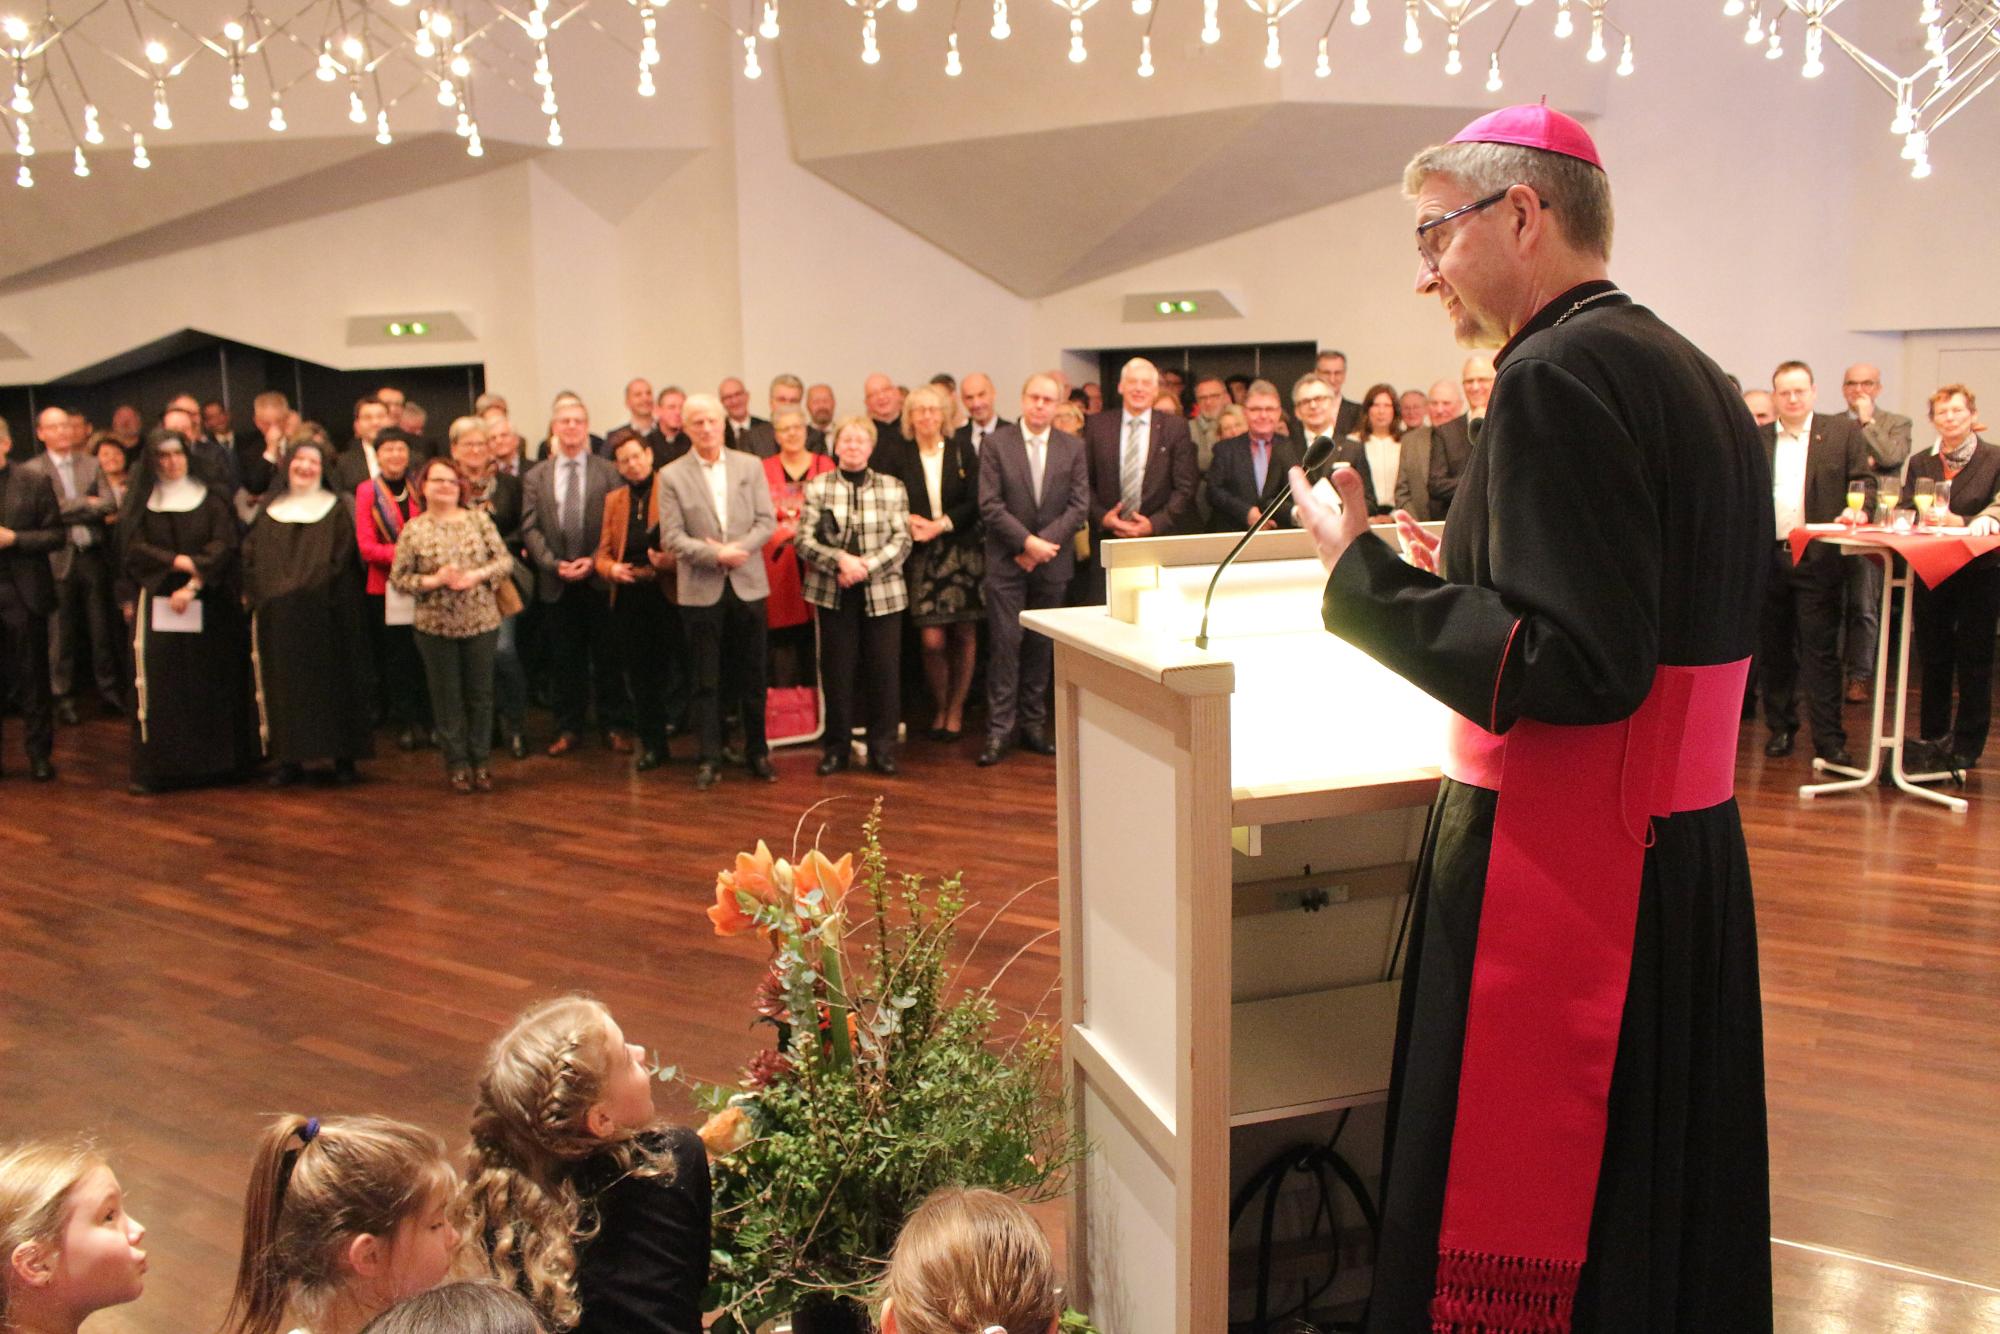 Mainz, 11. Januar 2020: Rund 220 Gäste waren zum Neujahrsempfang des Bistums Mainz mit Bischof Peter Kohlgraf im Erbacher Hof gekommen. (c) Bistum Mainz / Blum